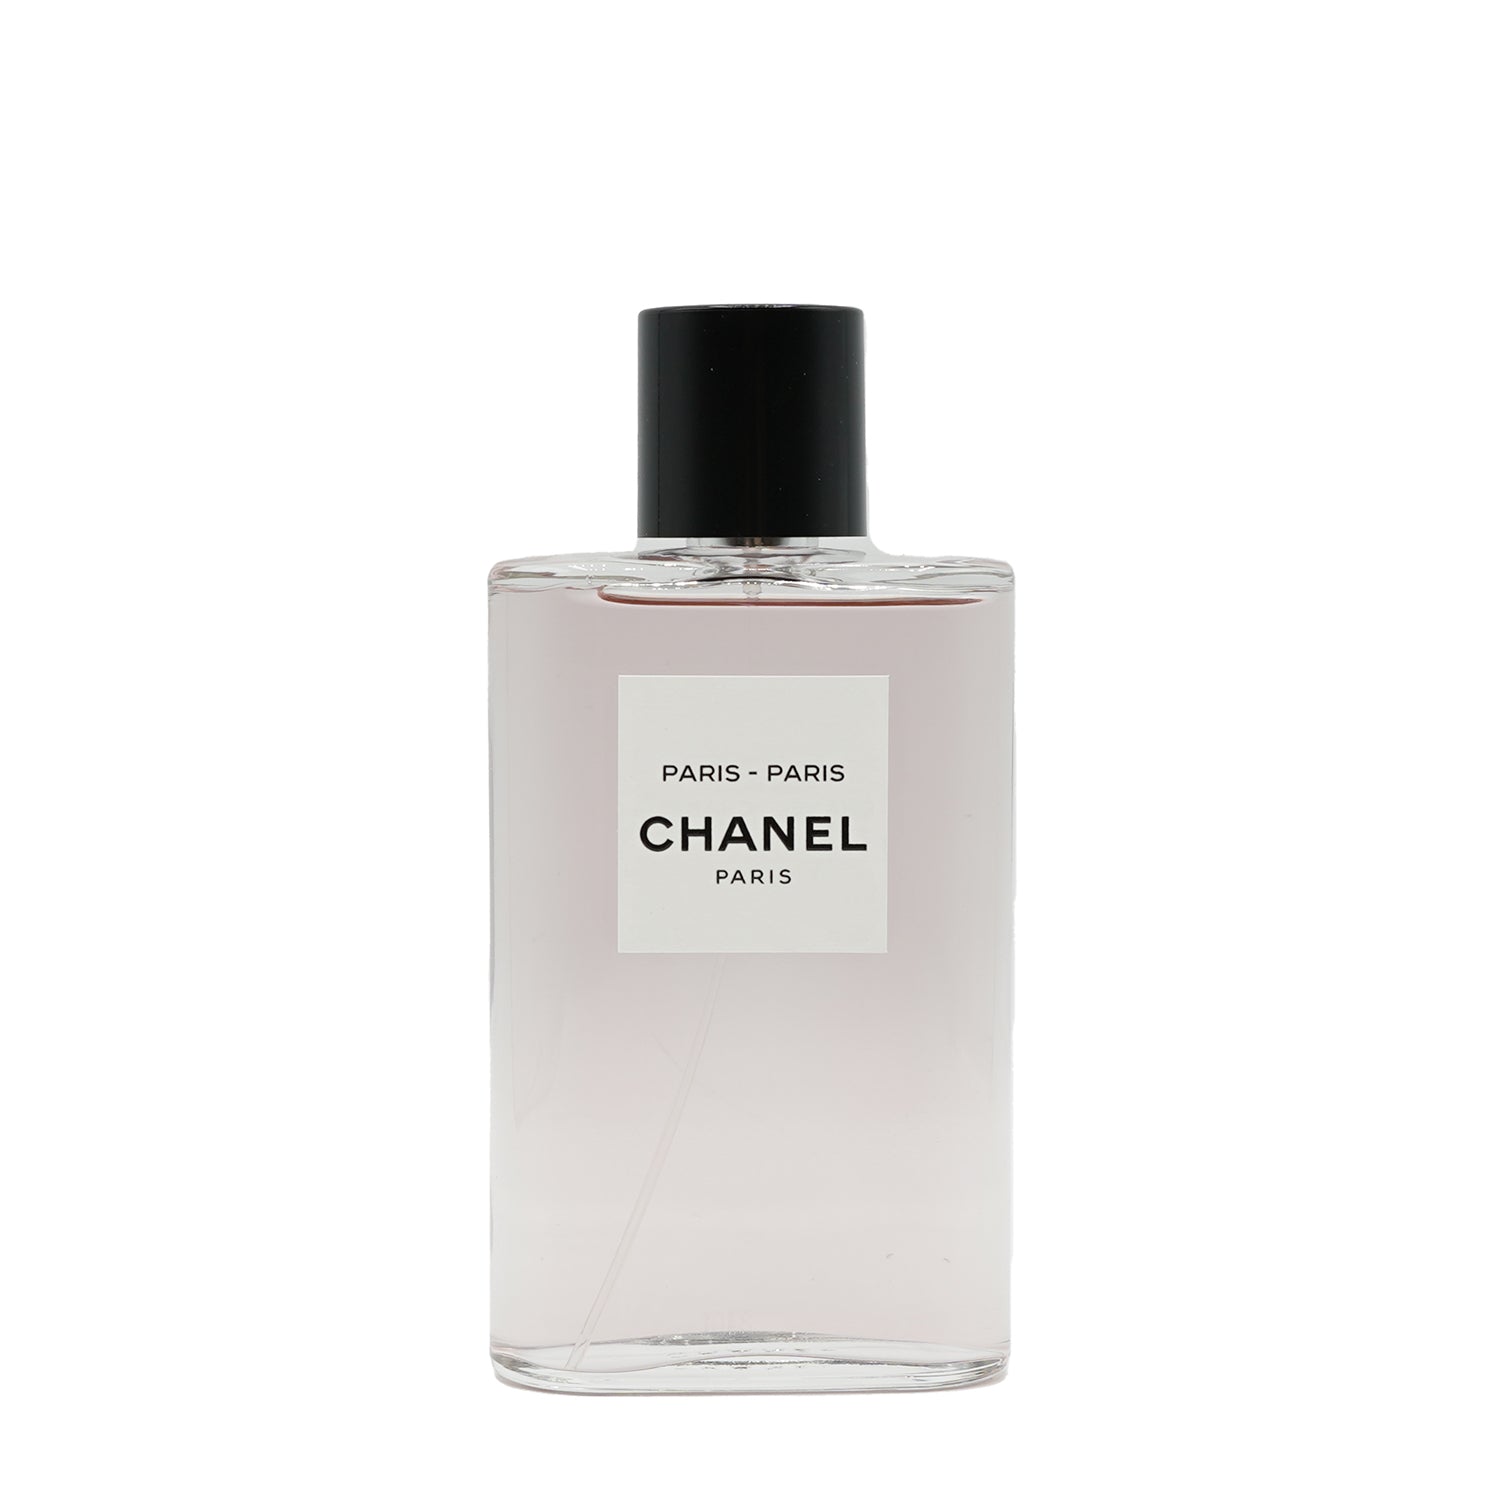 Chanel | Paris - Paris Abfüllung-Parfümproben